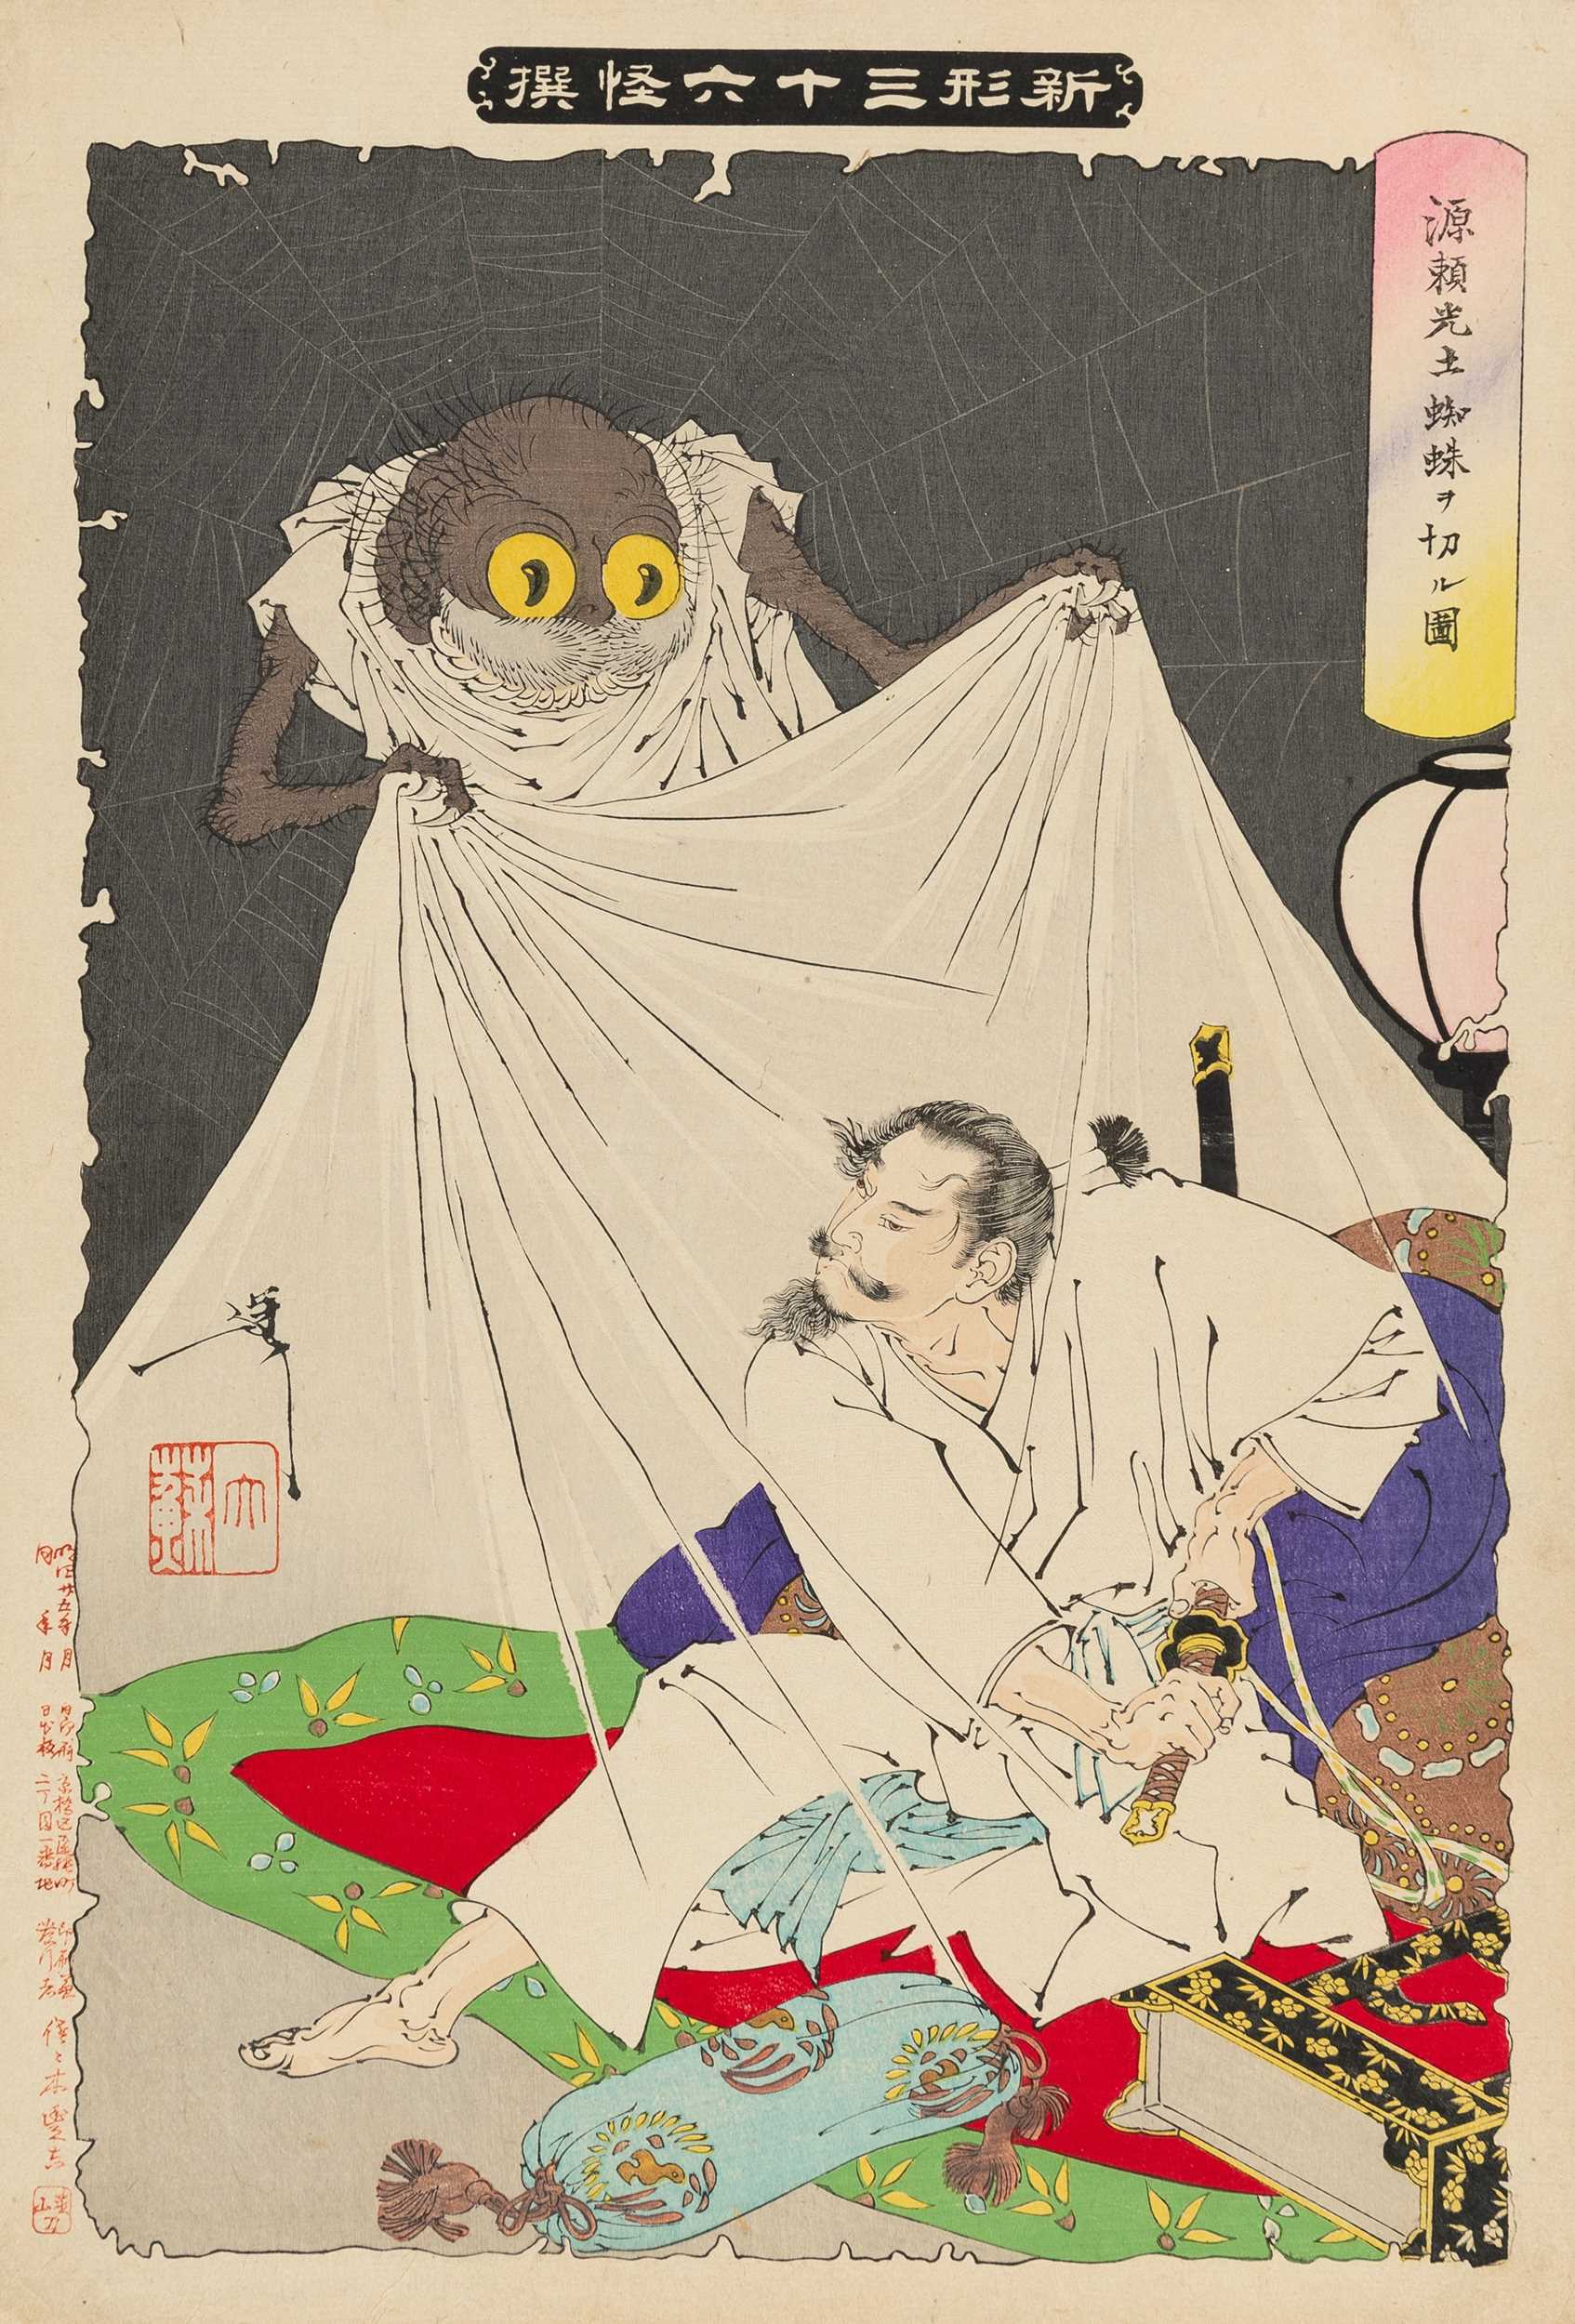 YOSHITOSHI TSUKIOKA GHOST STORIES OF UKIYOE